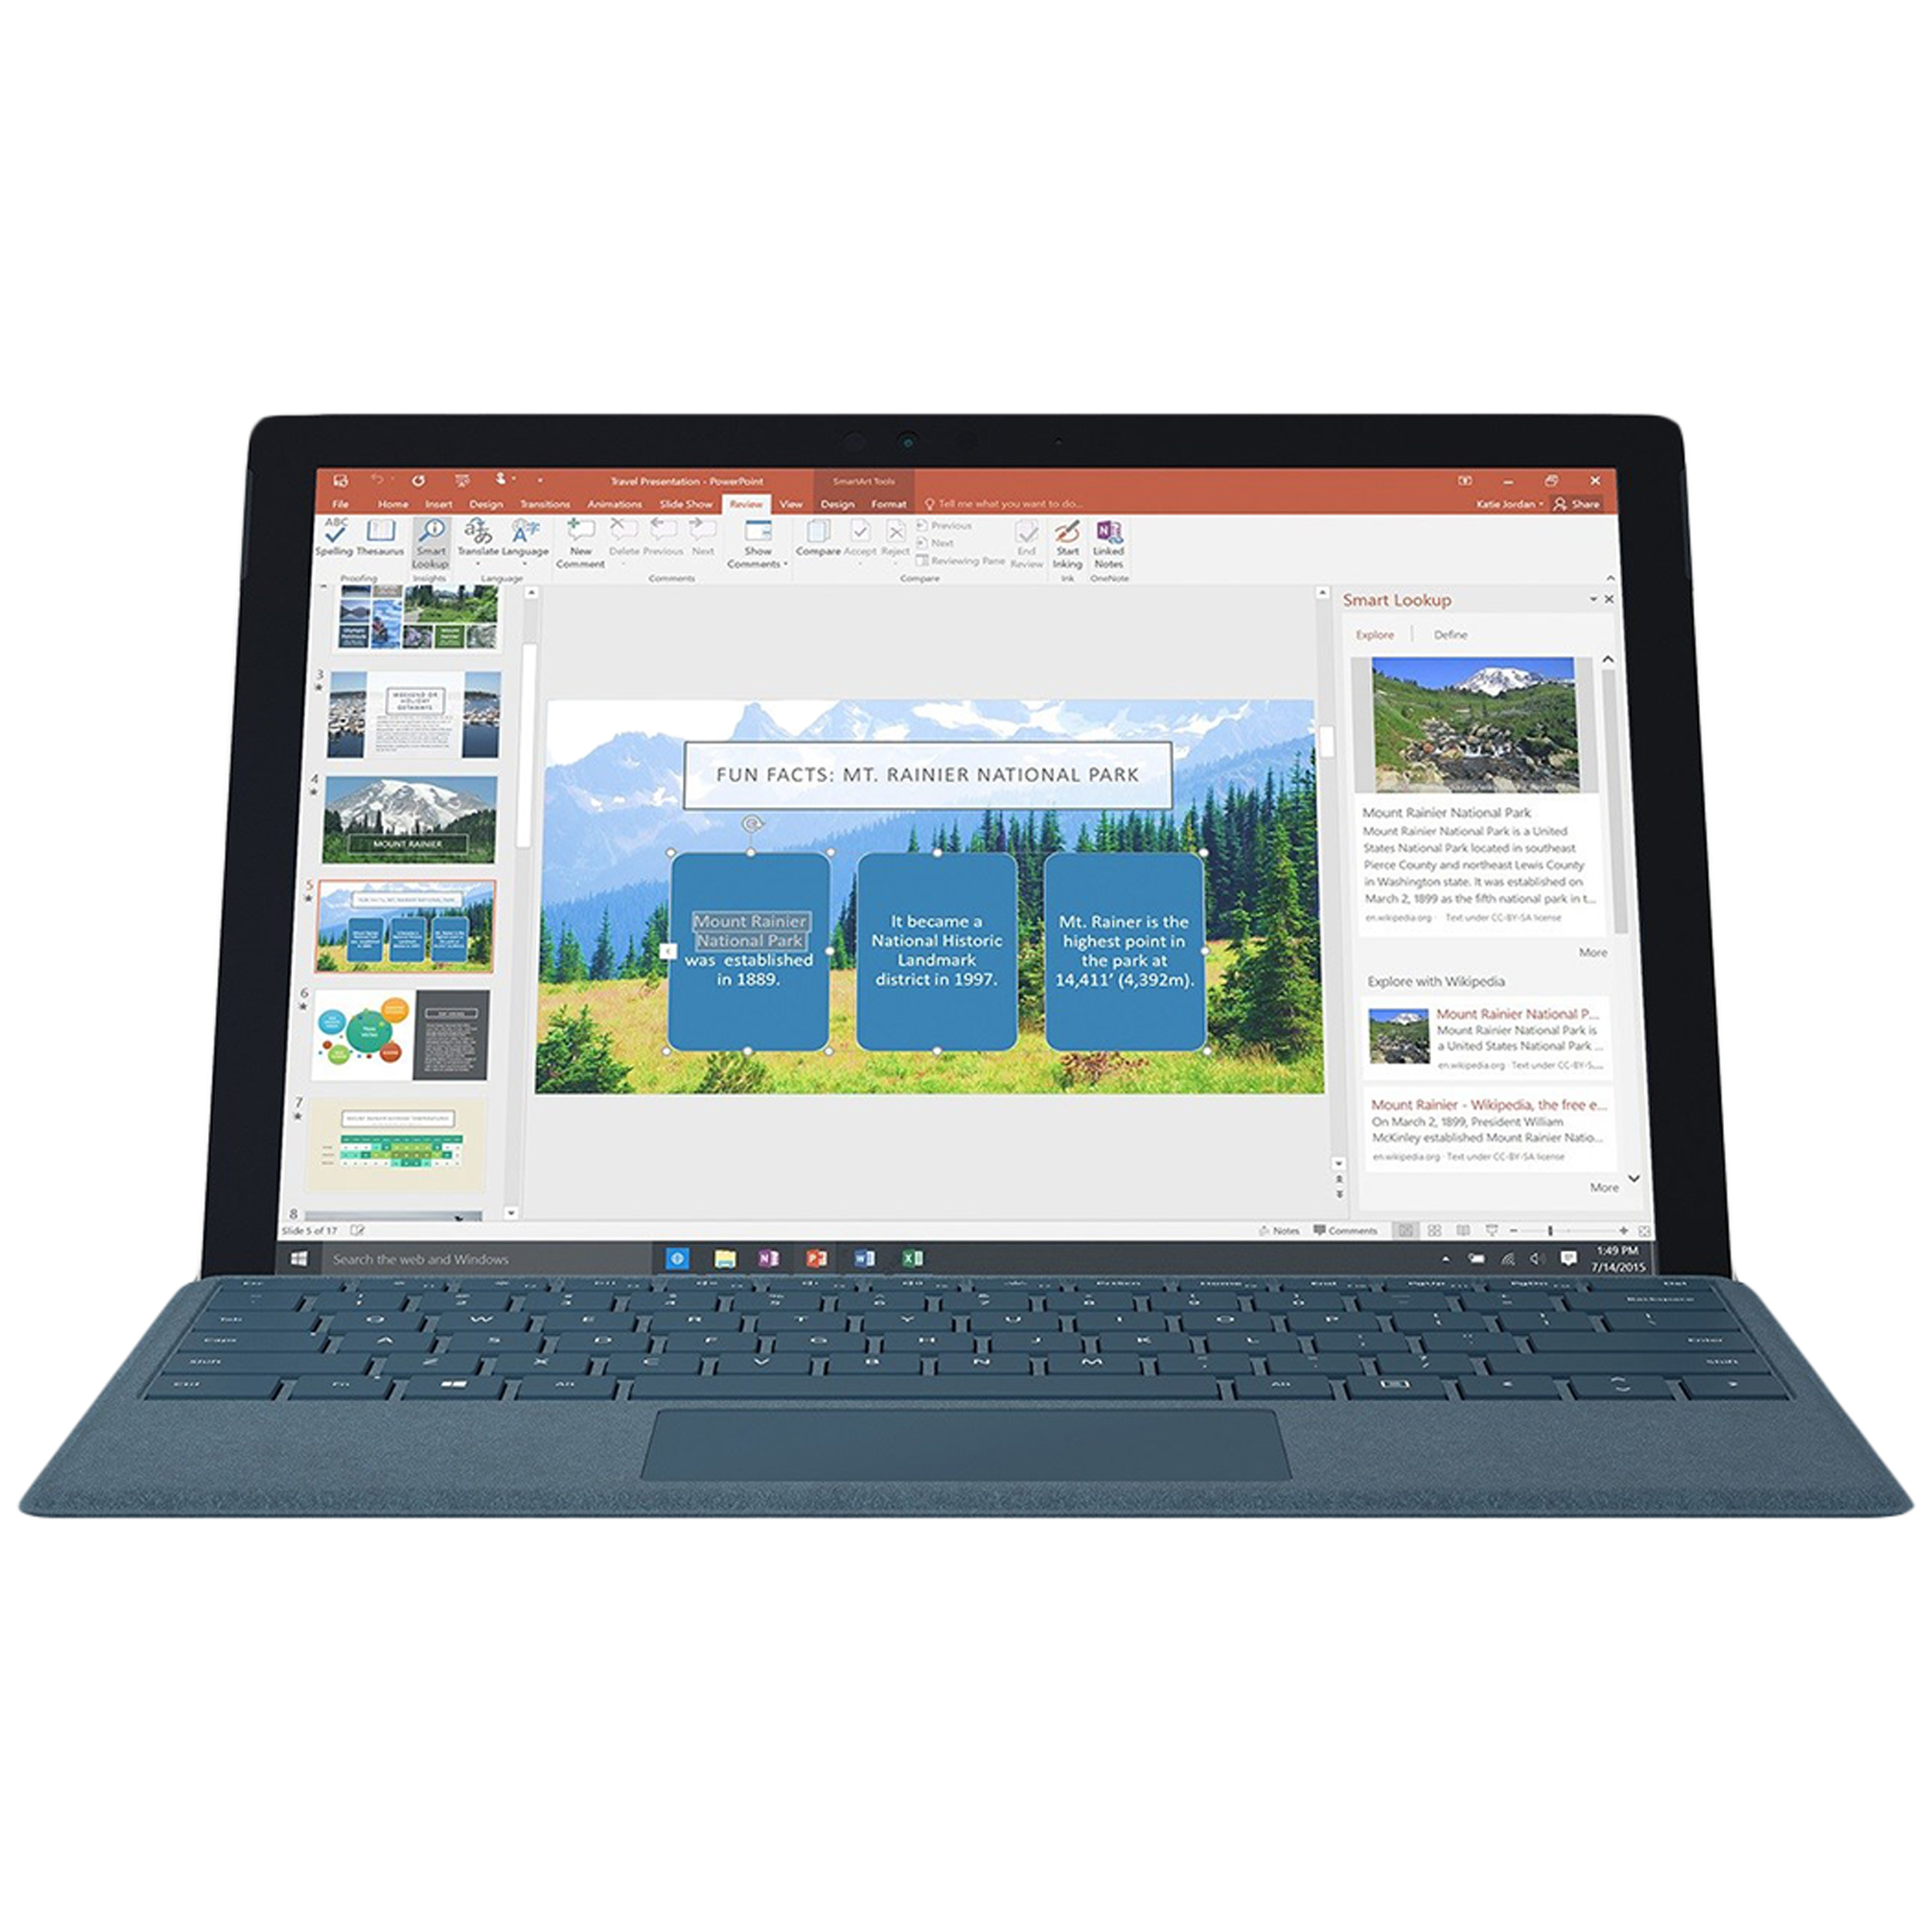 تبلت مایکروسافت مدل Surface Pro 2017 - C به همراه کیبورد سیگنیچر رنگ آبی کبالت و کیف چرم صنوبر - ظرفیت 256 گیگابایت